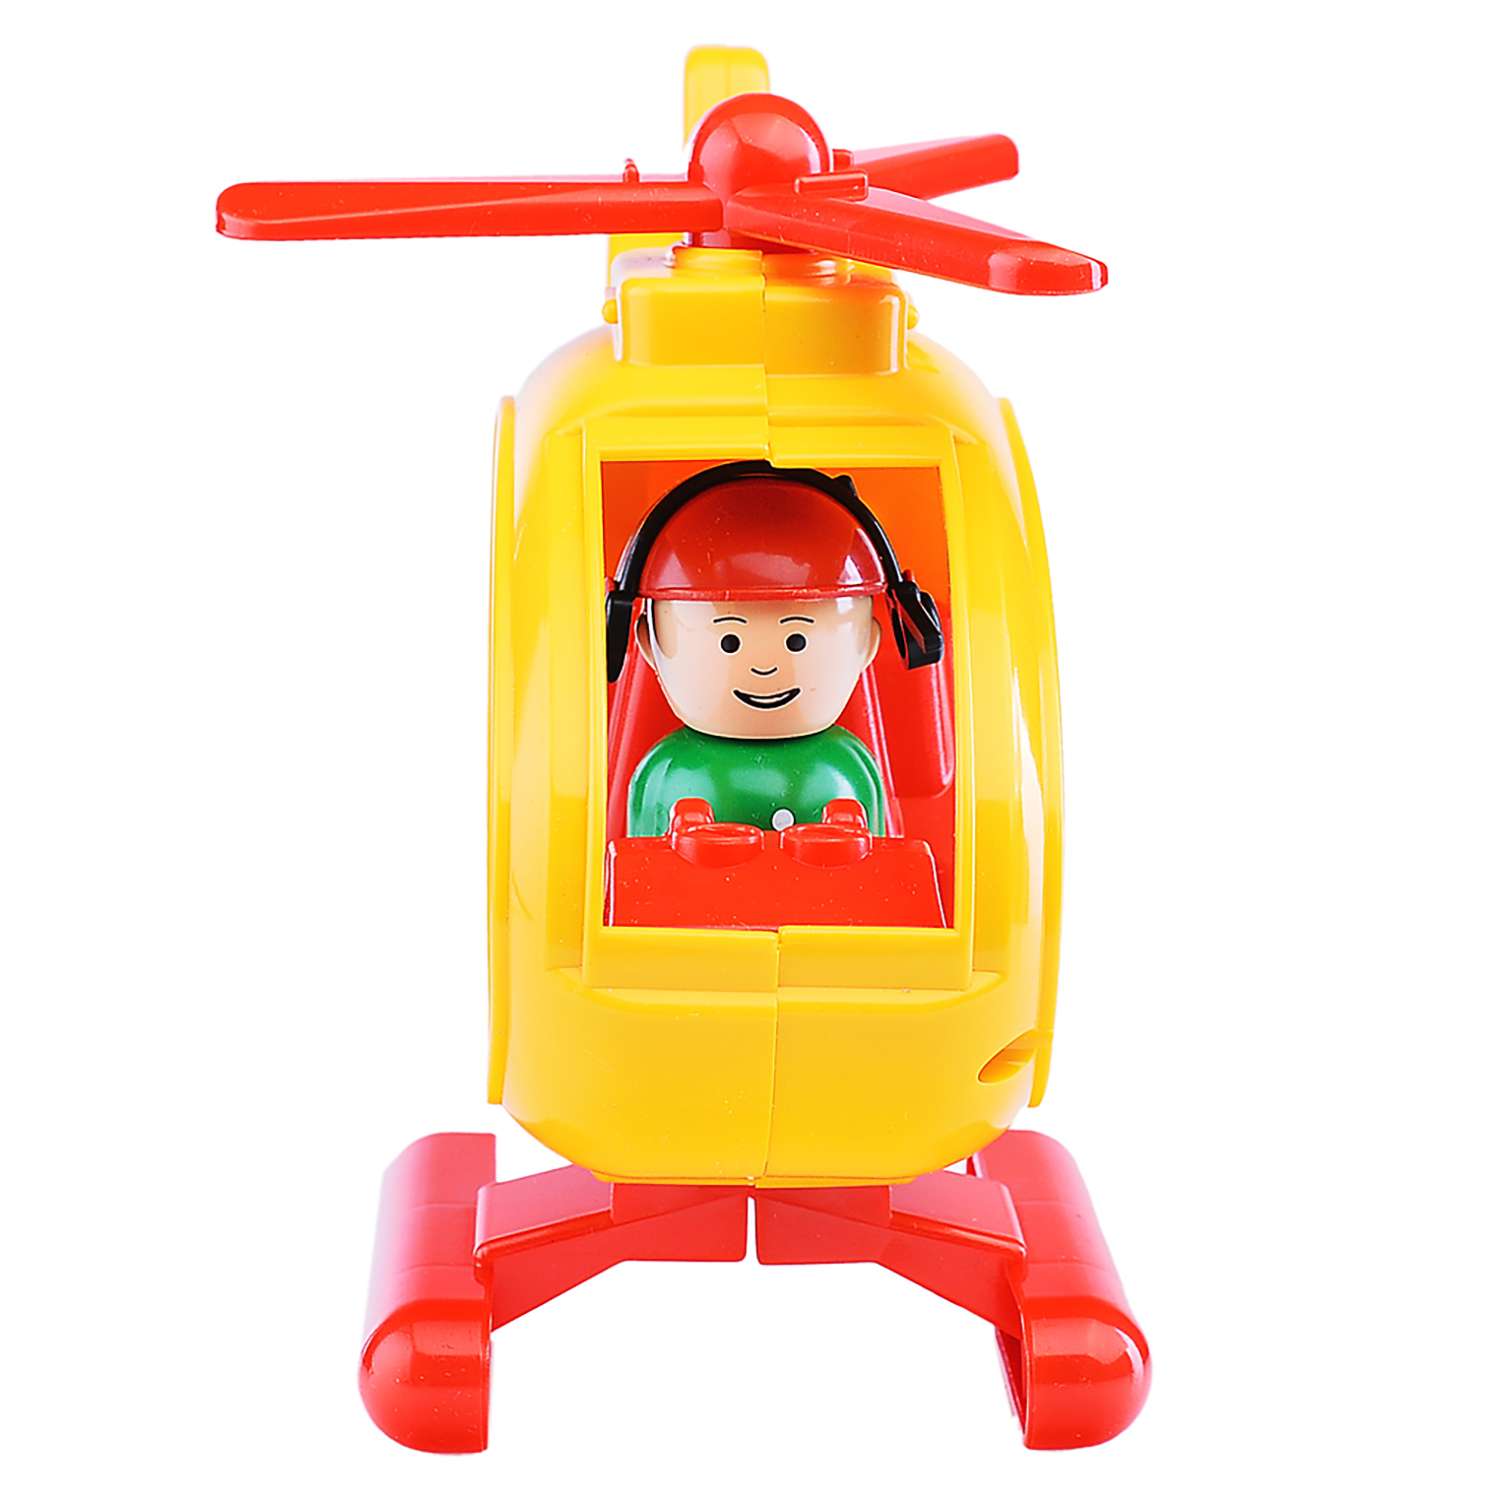 Вертолет Форма С-122-Ф Детский сад желтый 01137947_ЖЛ - фото 2